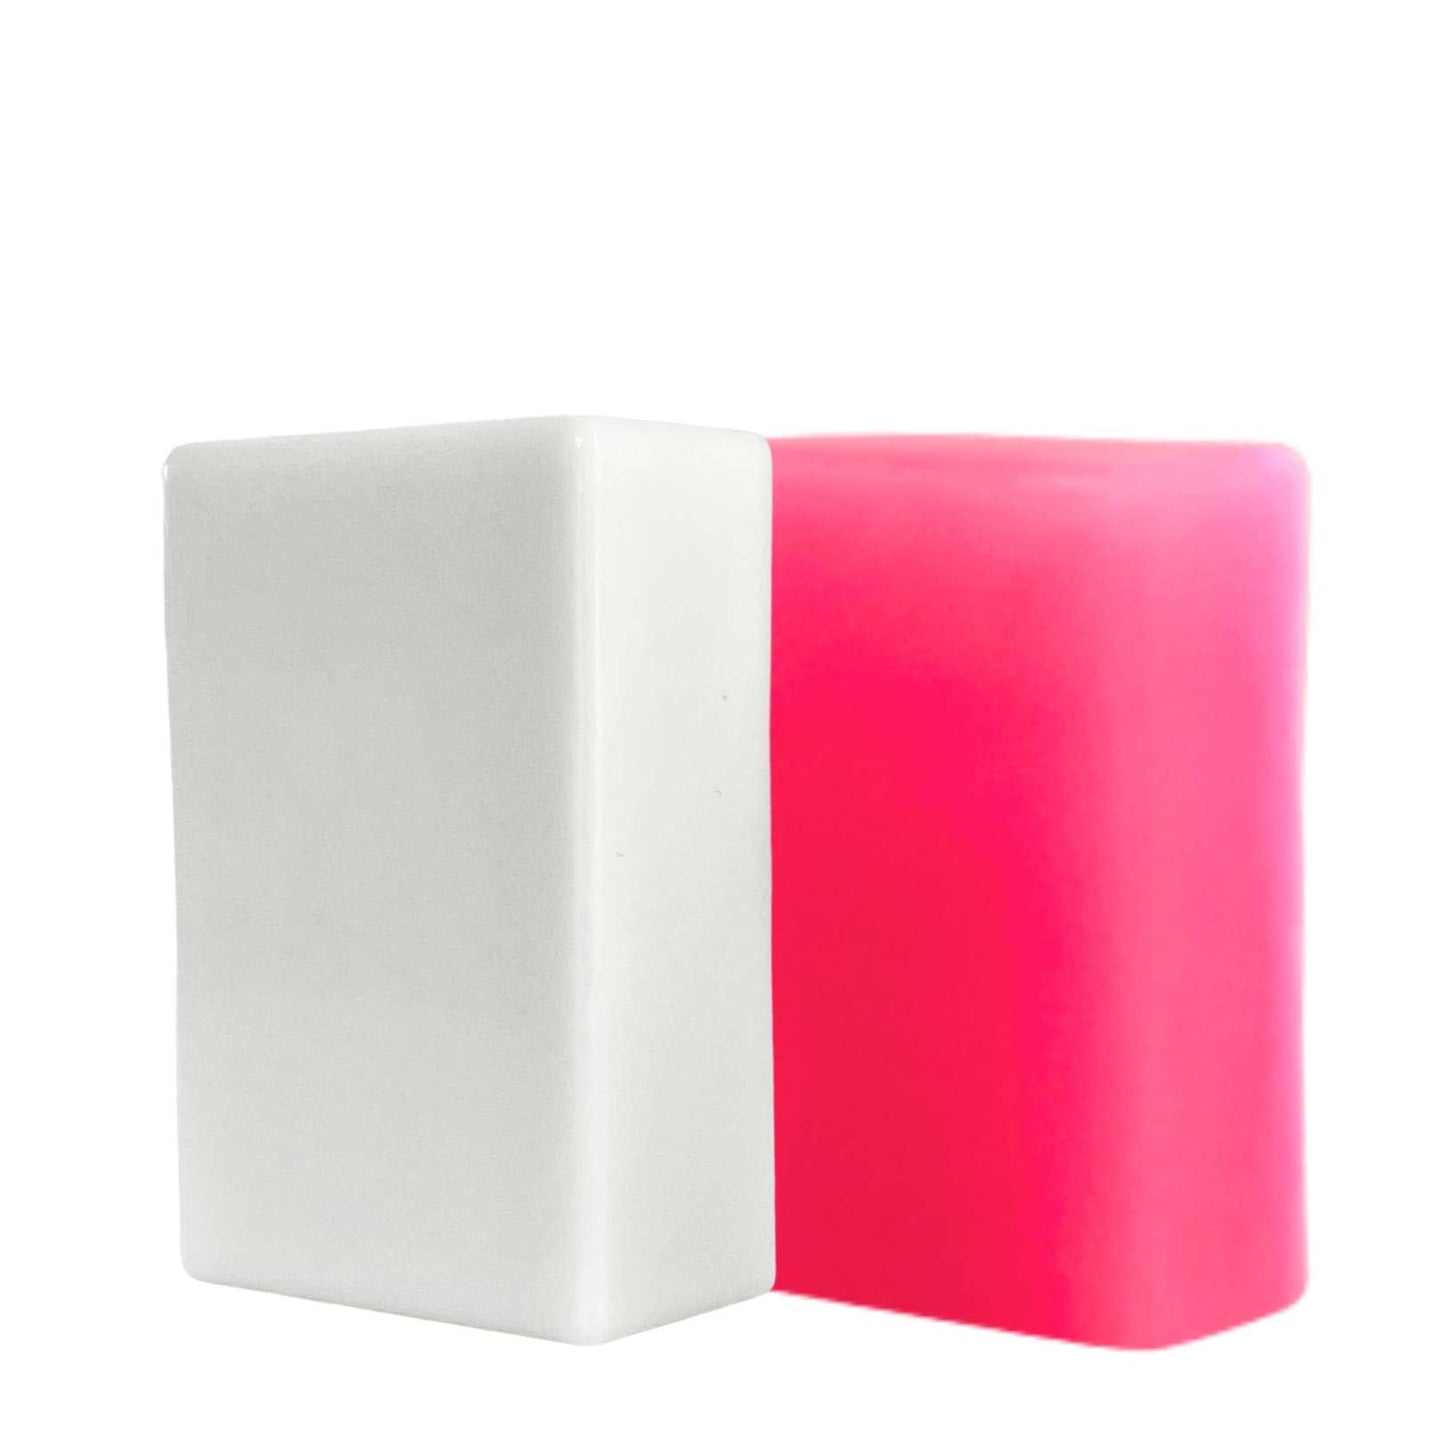 yoni soap white yoni soap next to pink yoni soap